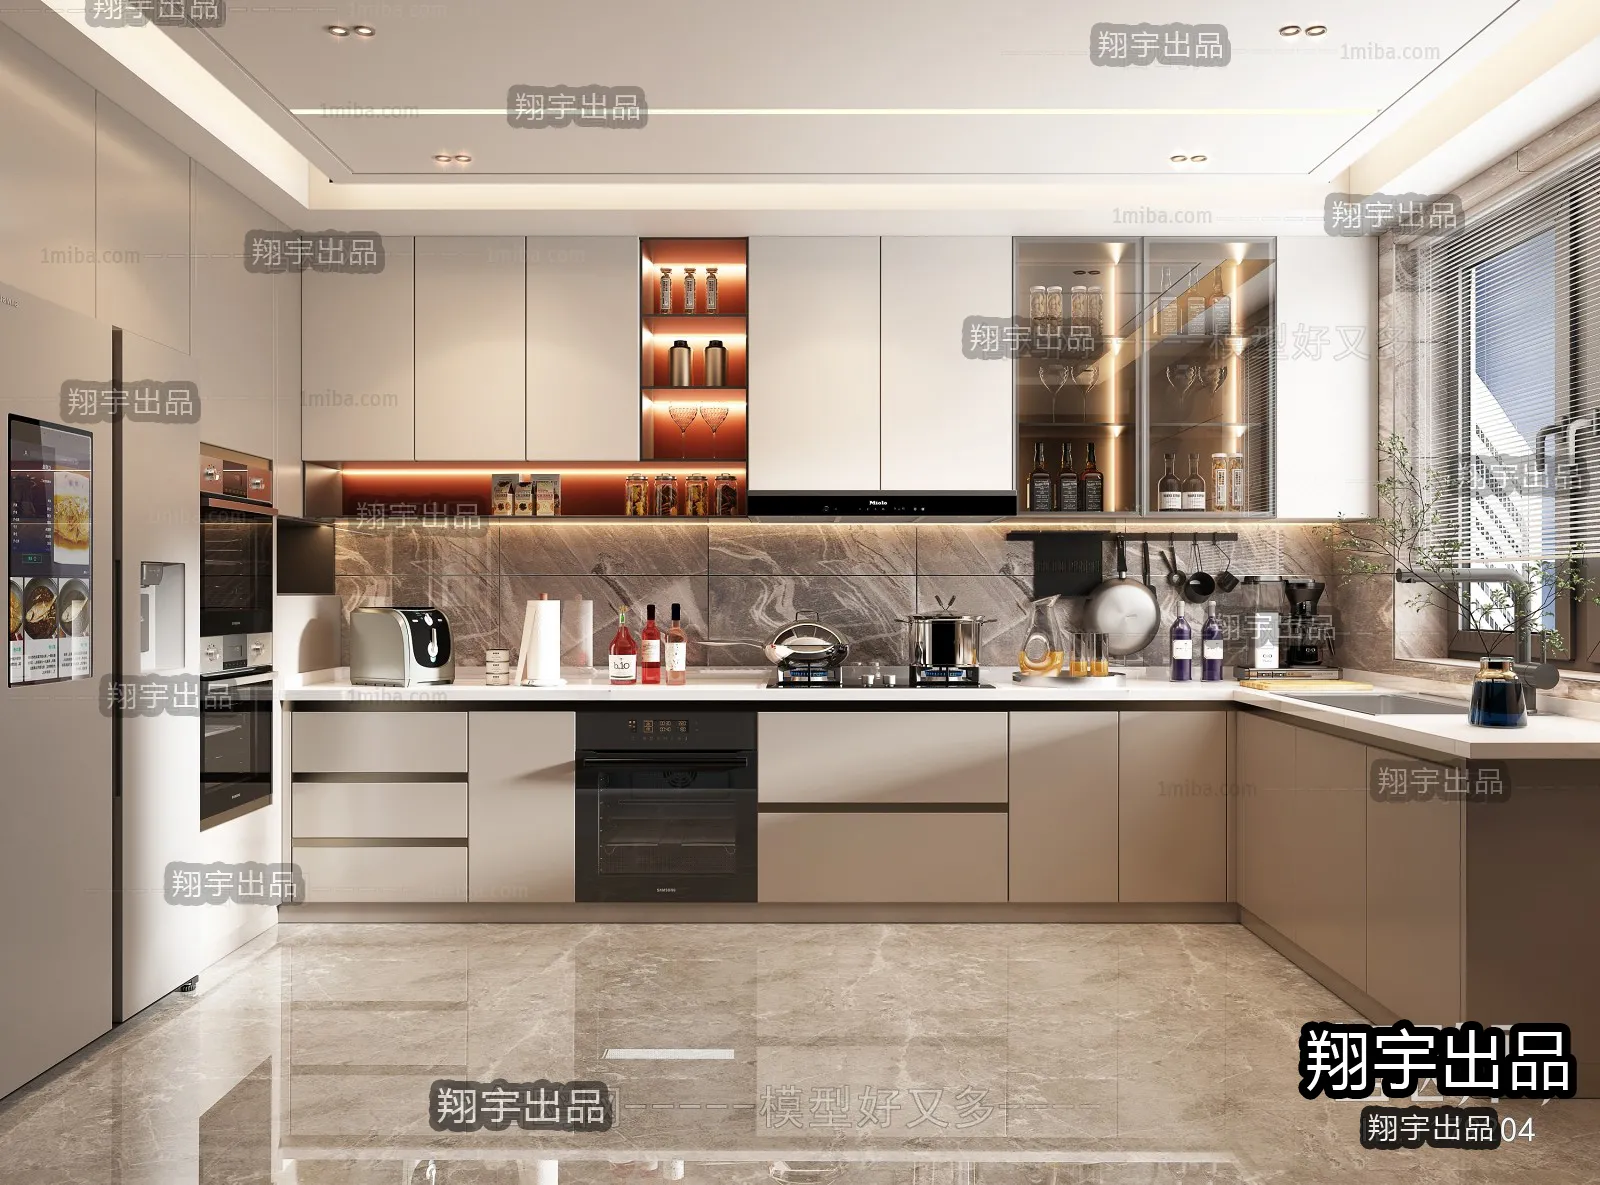 Kitchen – Modern Interior Design – 3D Models – 029